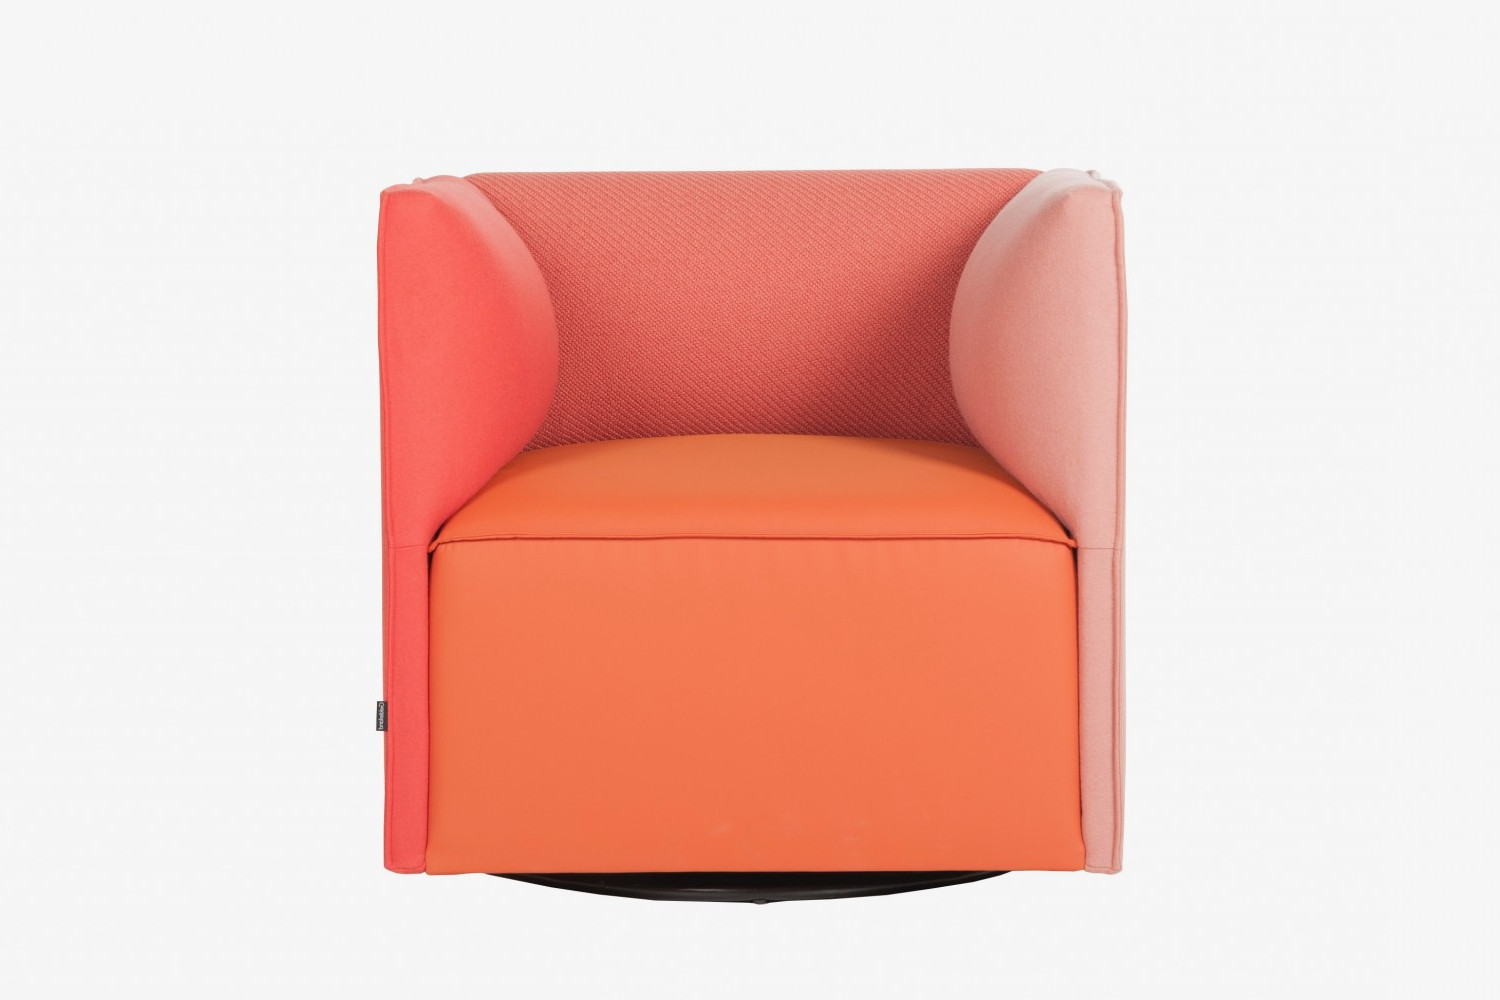 gelderland 7840 pillow fauteuils